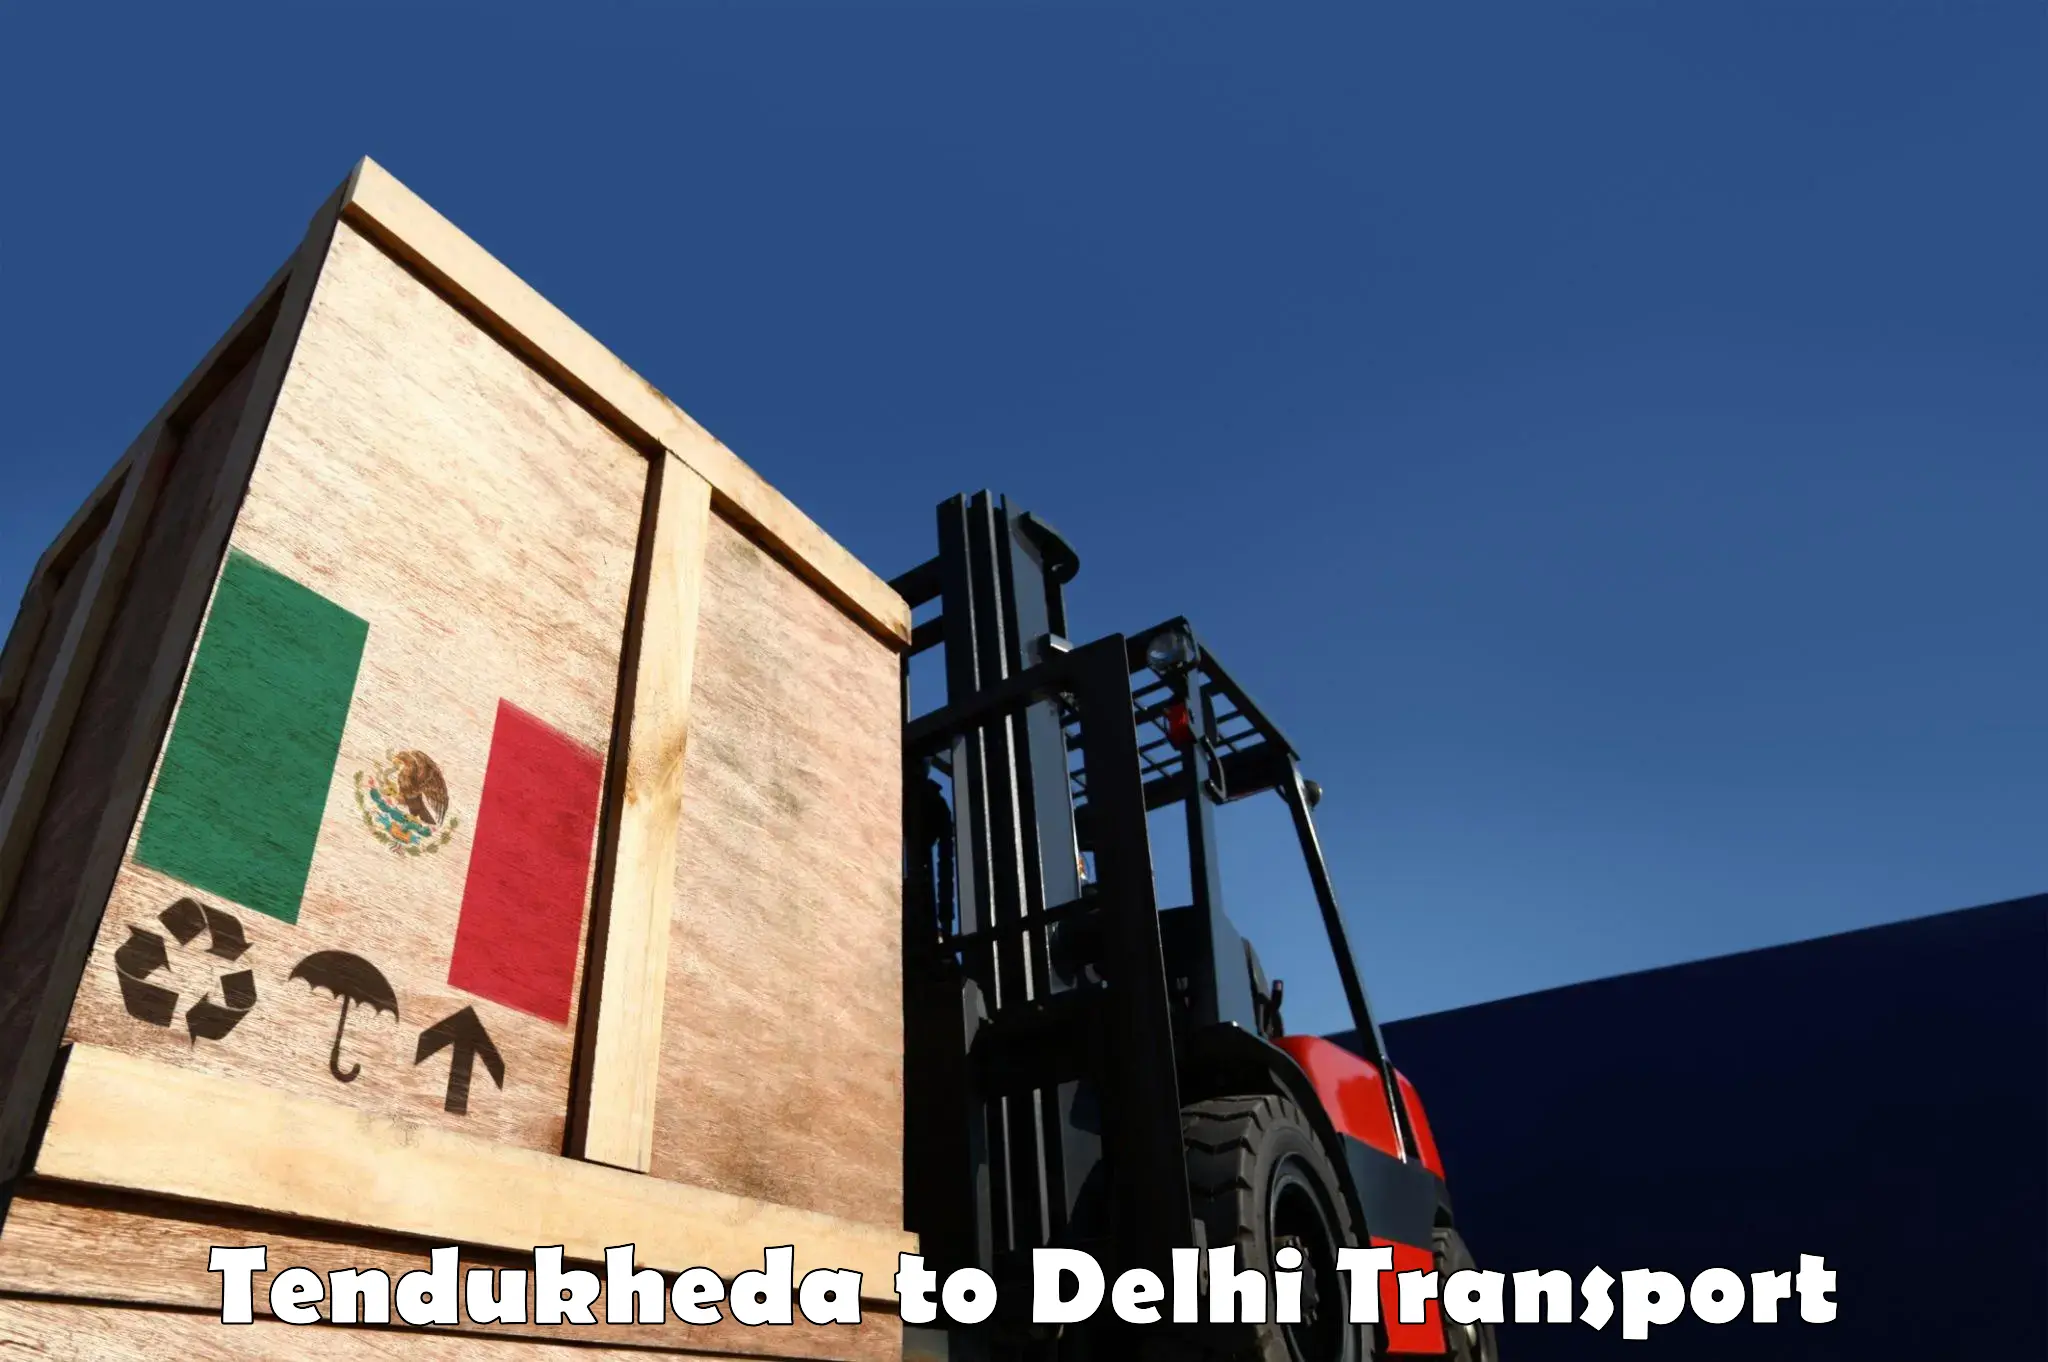 Furniture transport service Tendukheda to Delhi Technological University DTU